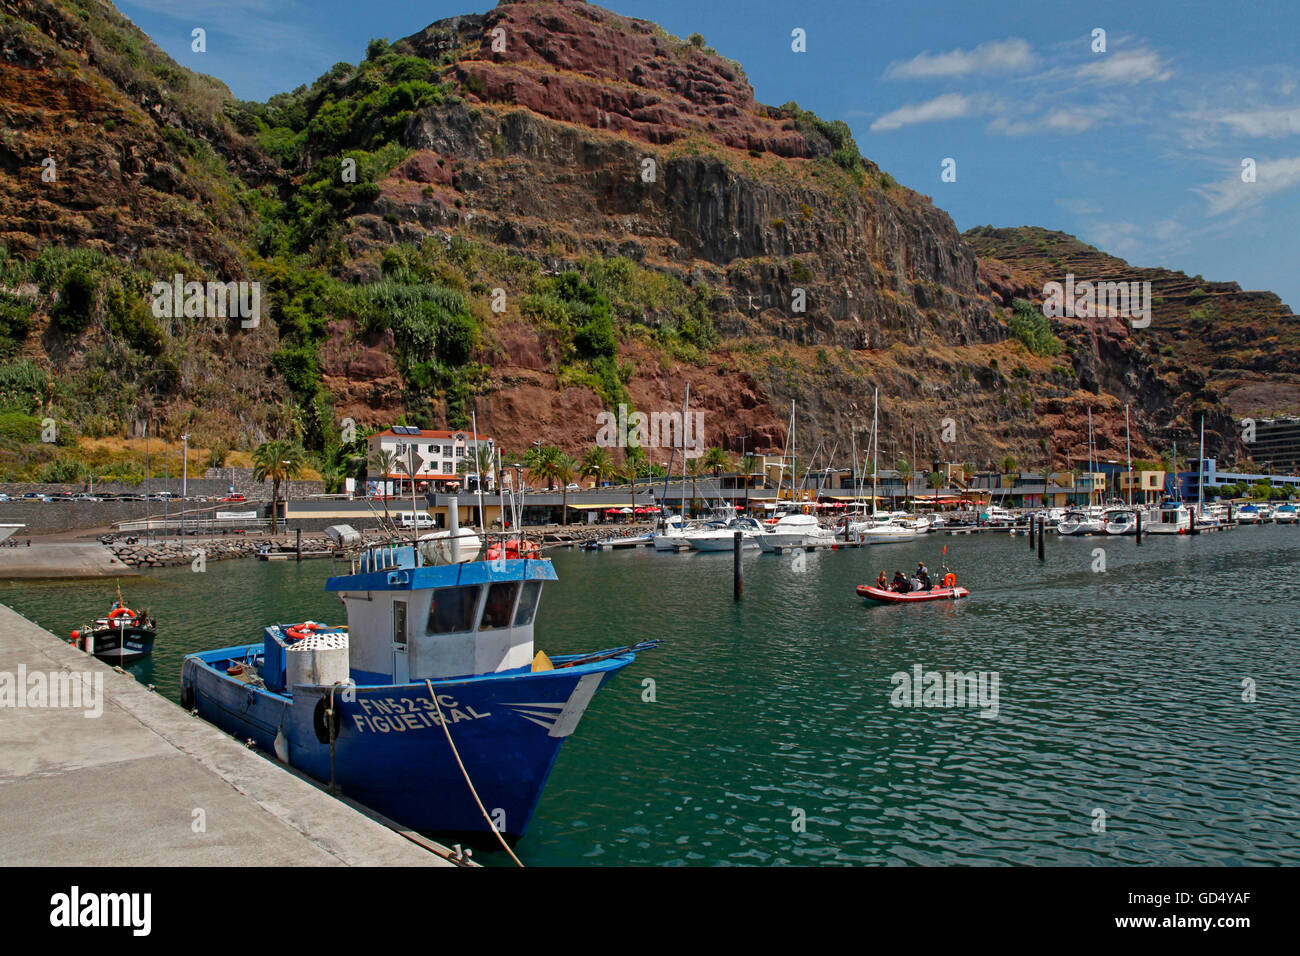 La pêche et le port de plaisance de Calheta, île de Madère, Portugal Banque D'Images